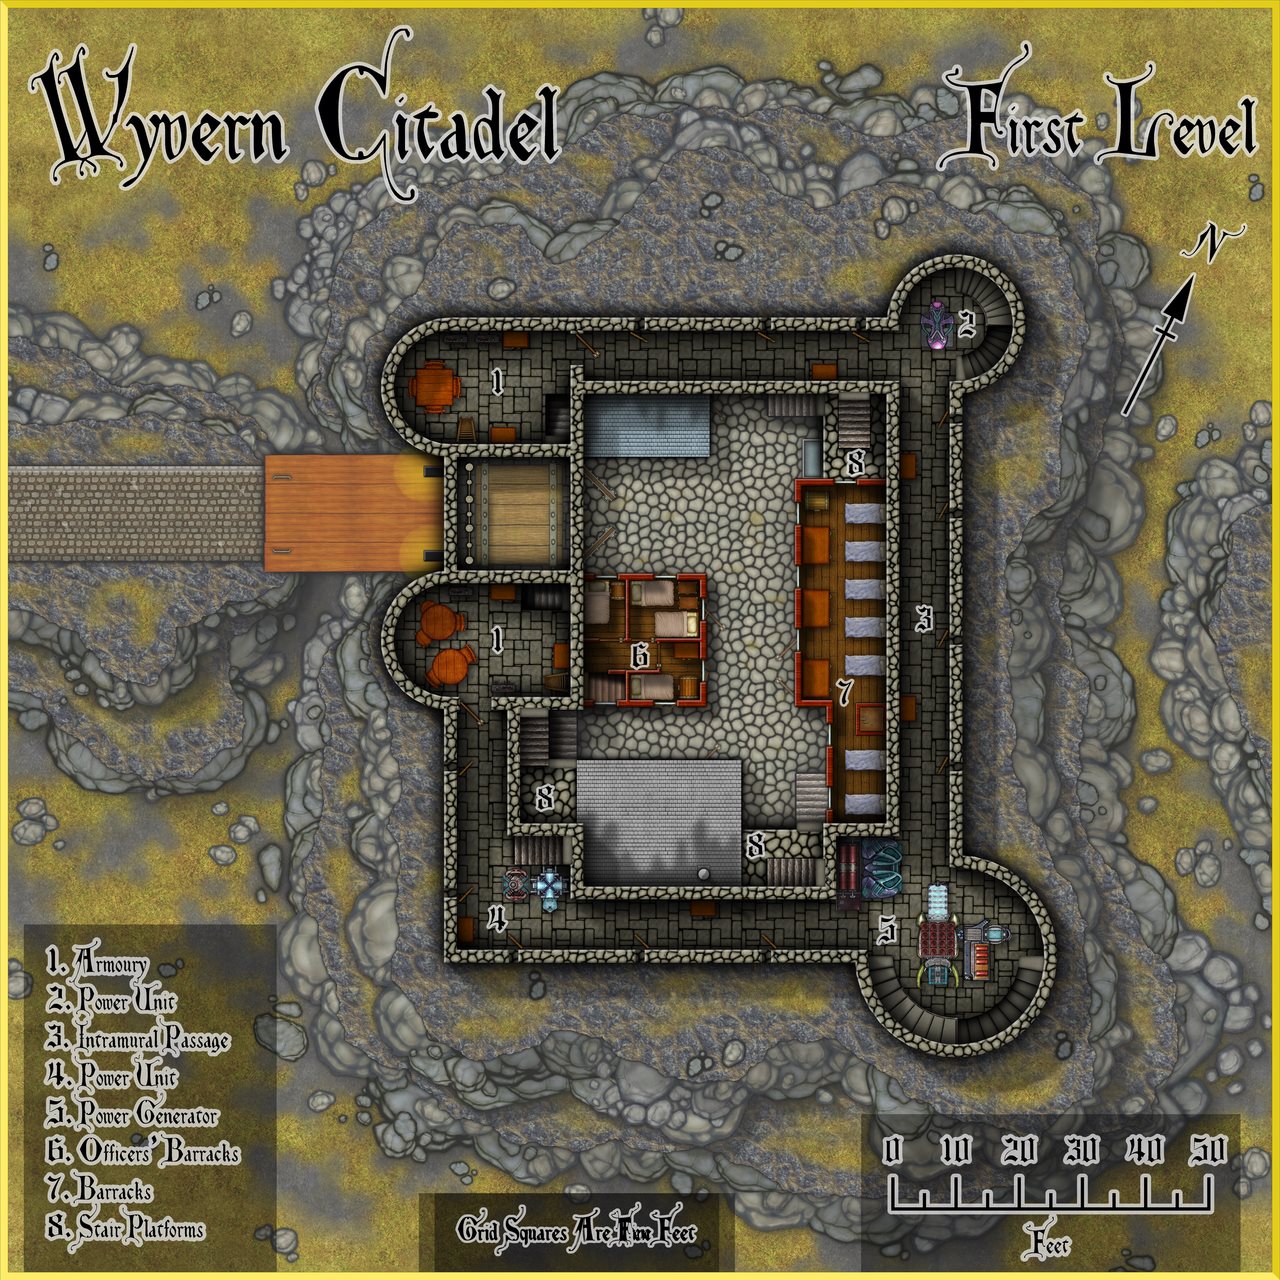 Nibirum Map: wyvern citadel - first level by Wyvern